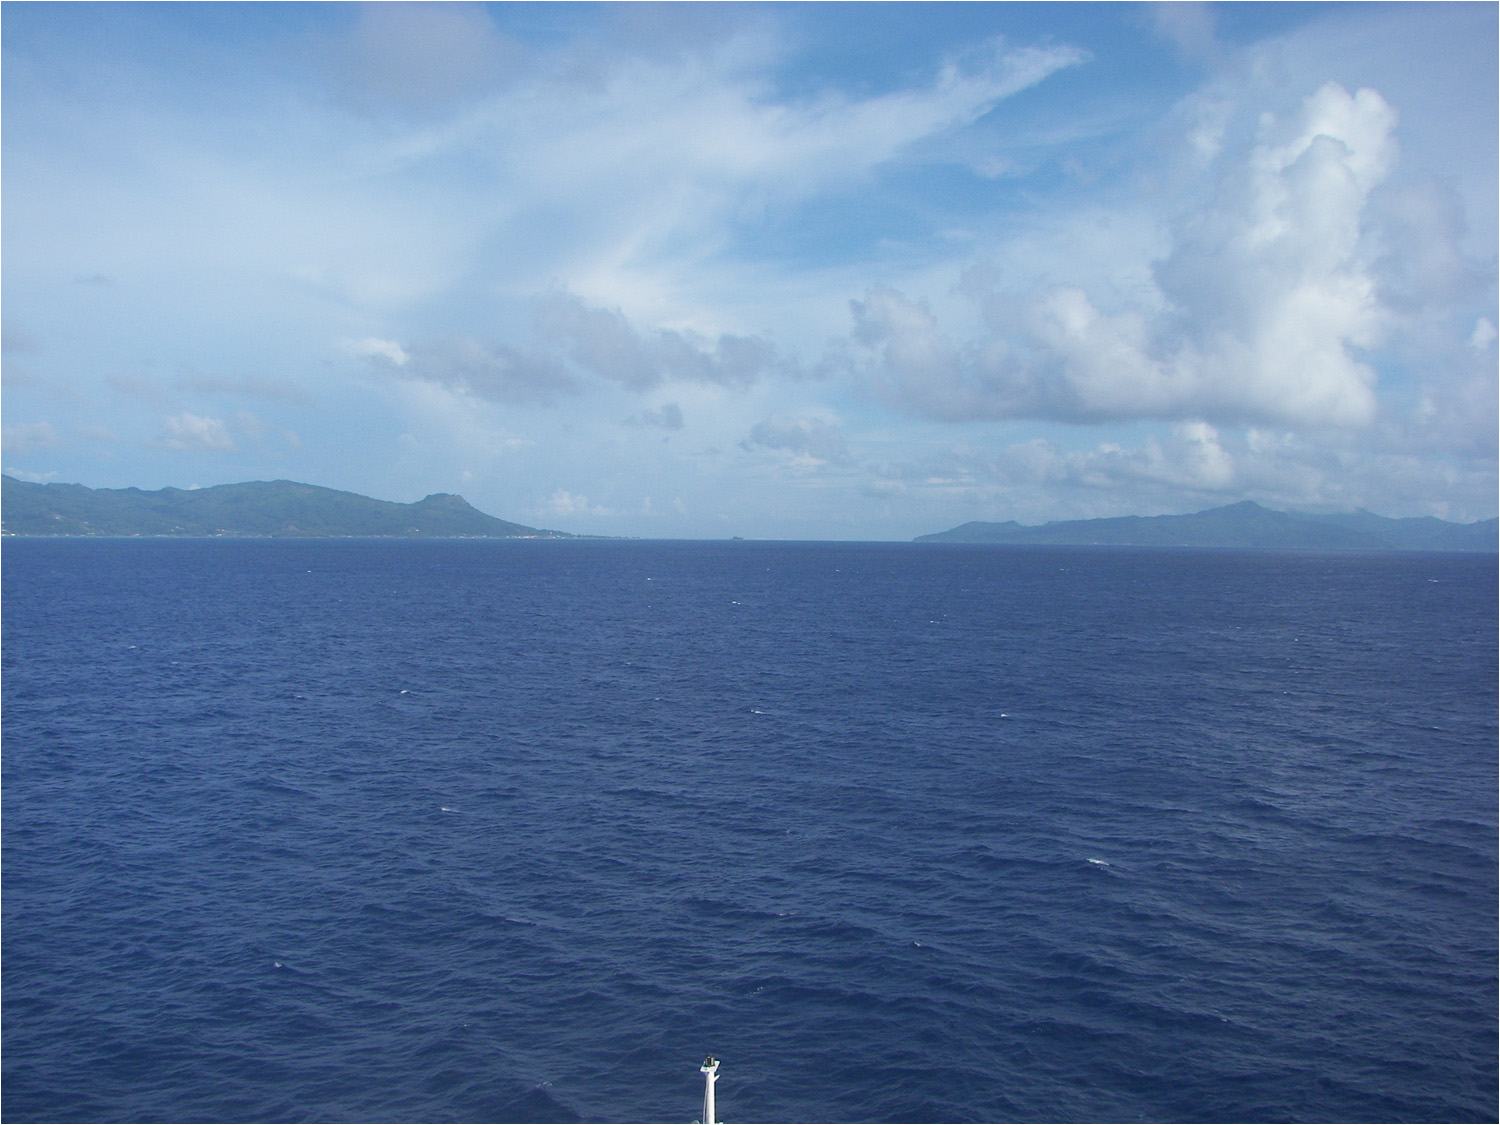 Looking between the islands of Raiatea(L) and Tahaa